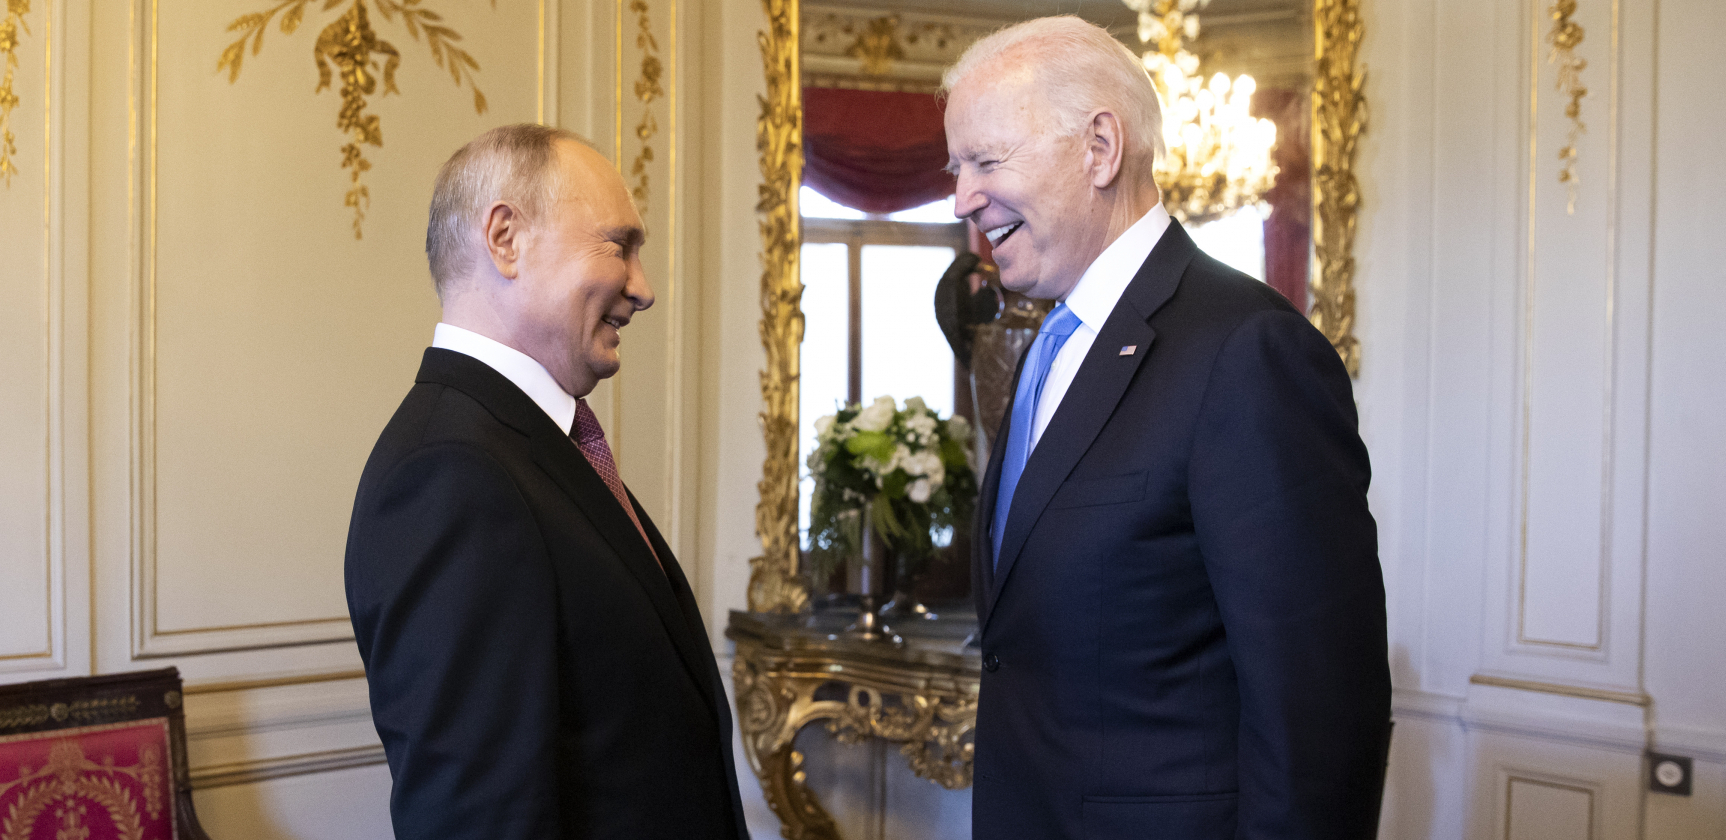 ČEKA SE VAŠINGTON Oglasio se Kremlj o sastanku - Kad će razgovarati Putin i Bajden?